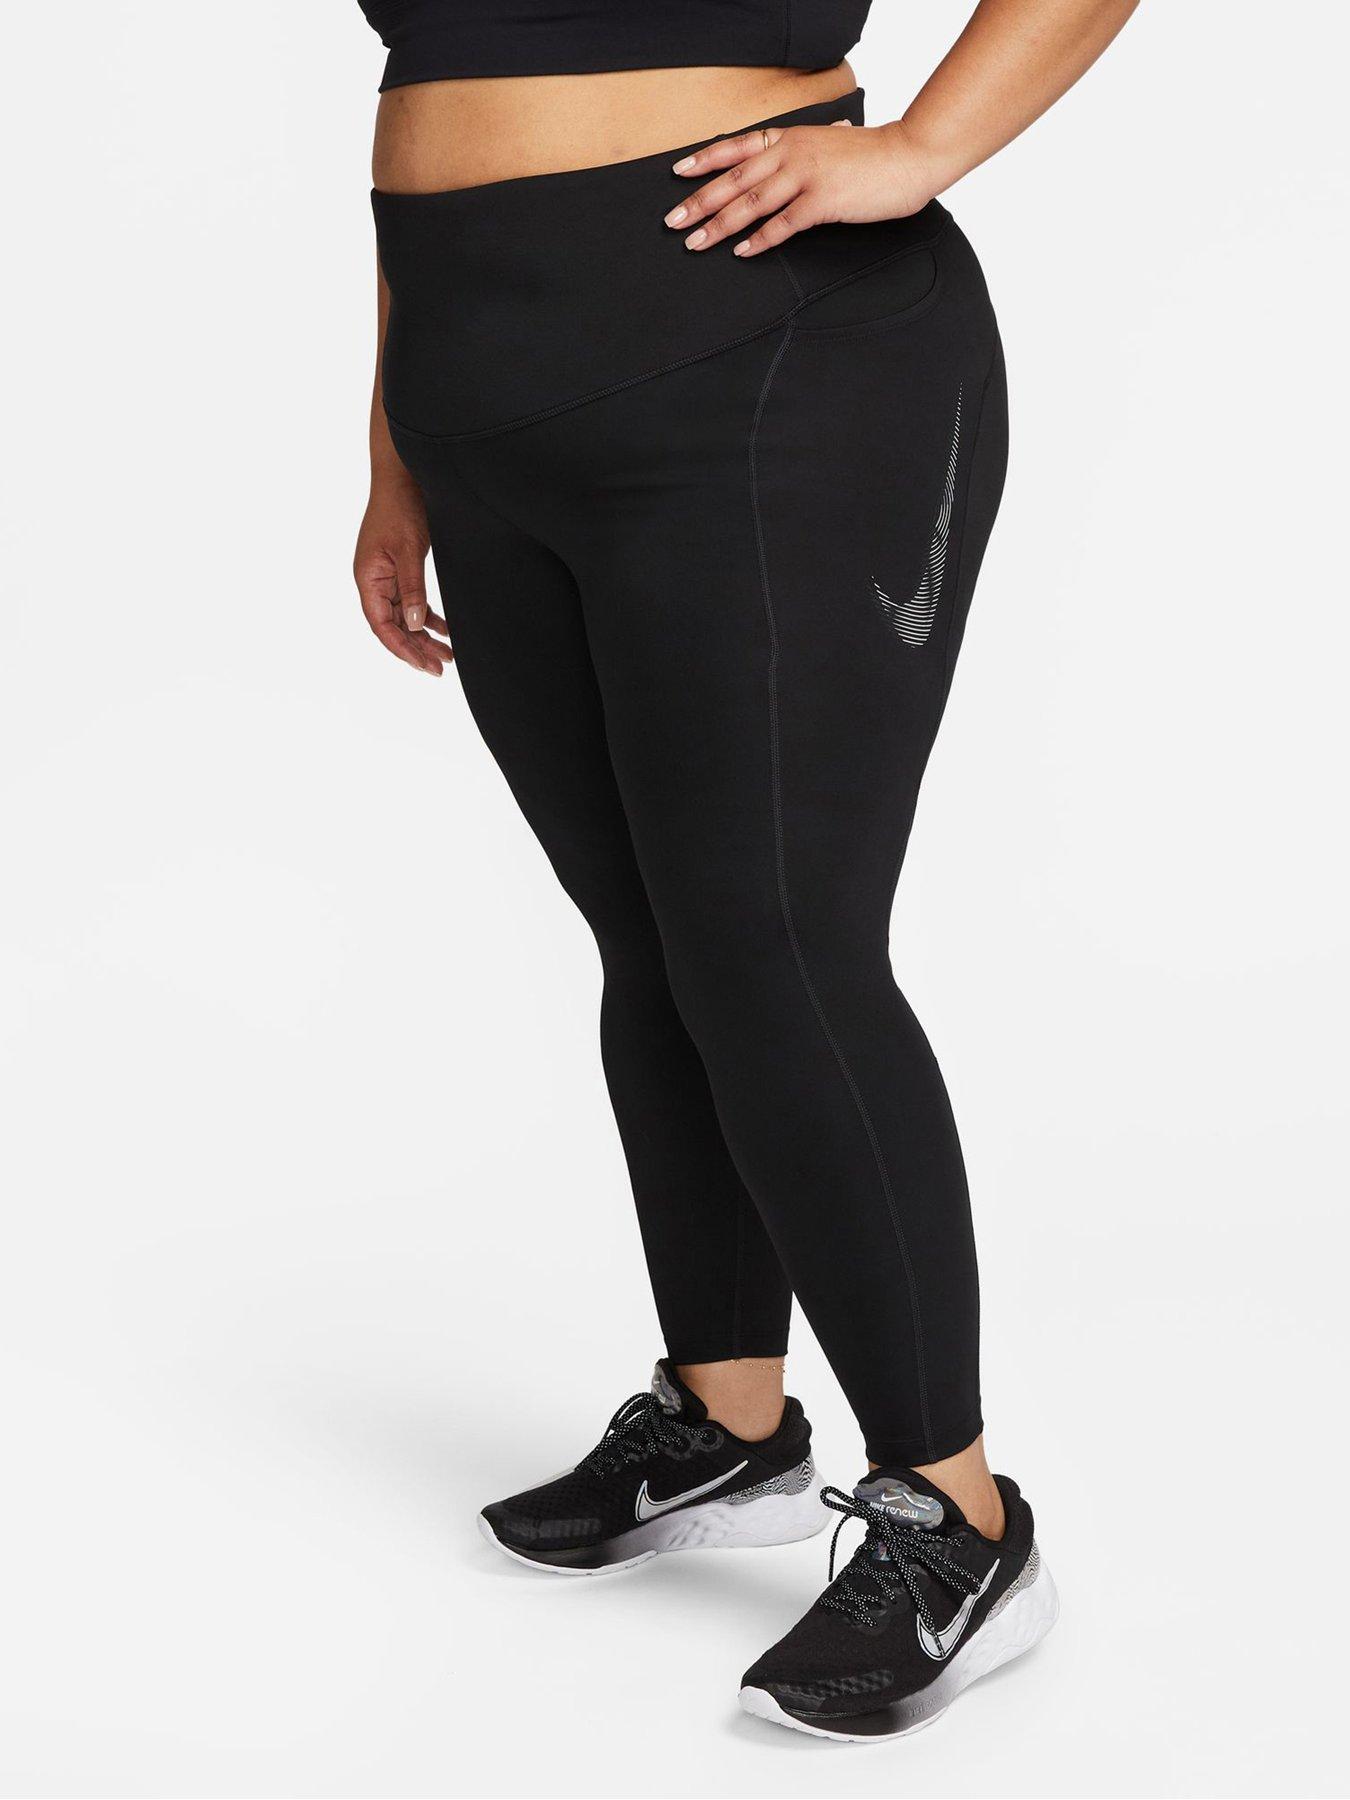 Sportwear Nike leggings XL, Women's Fashion, Activewear on Carousell